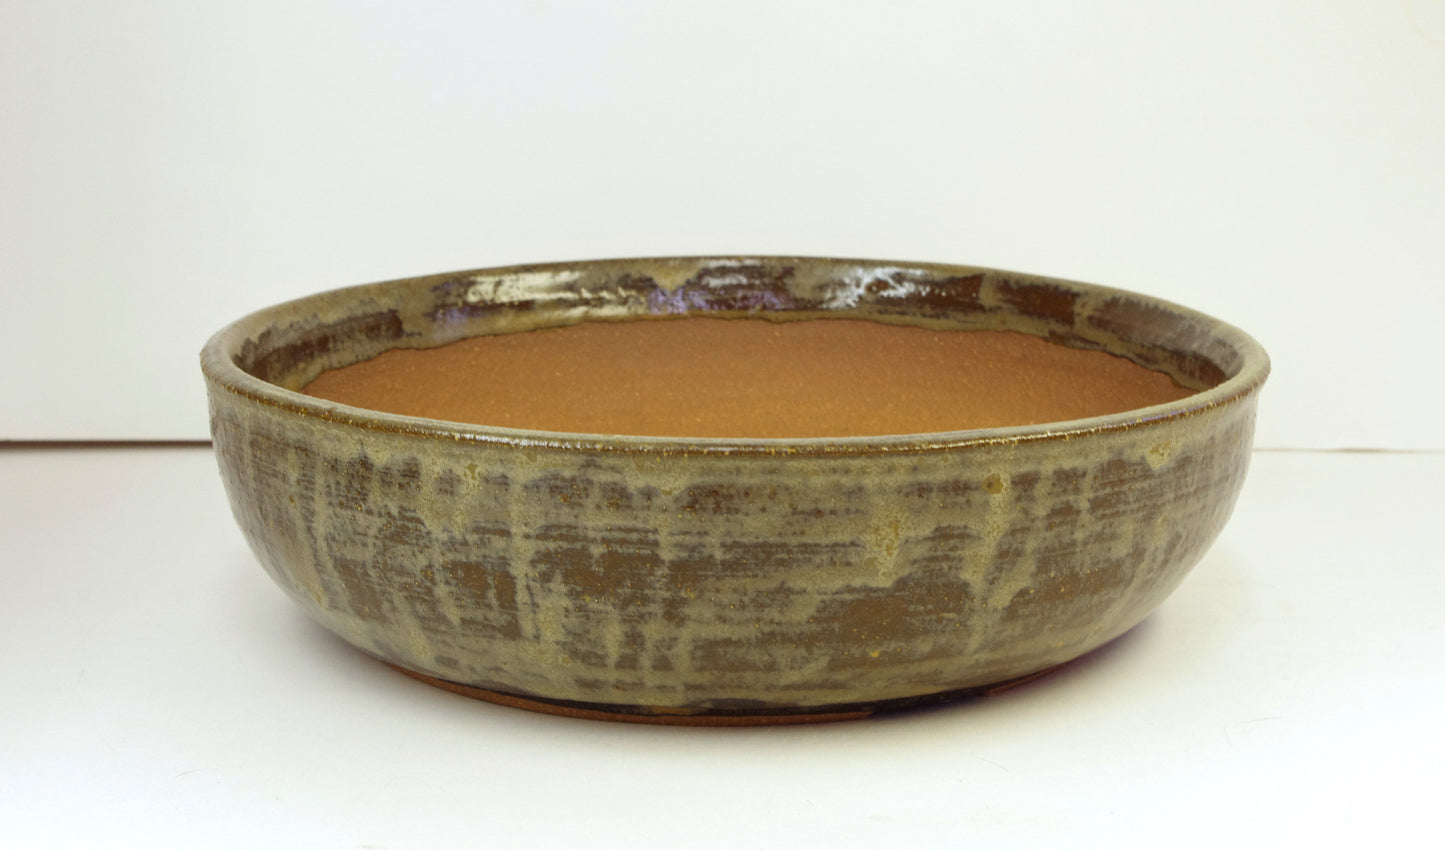 2130 Bonsai Pot, Hand Thrown Stoneware, Dark Browns, Tans, 10 1/4 x 2 3/4